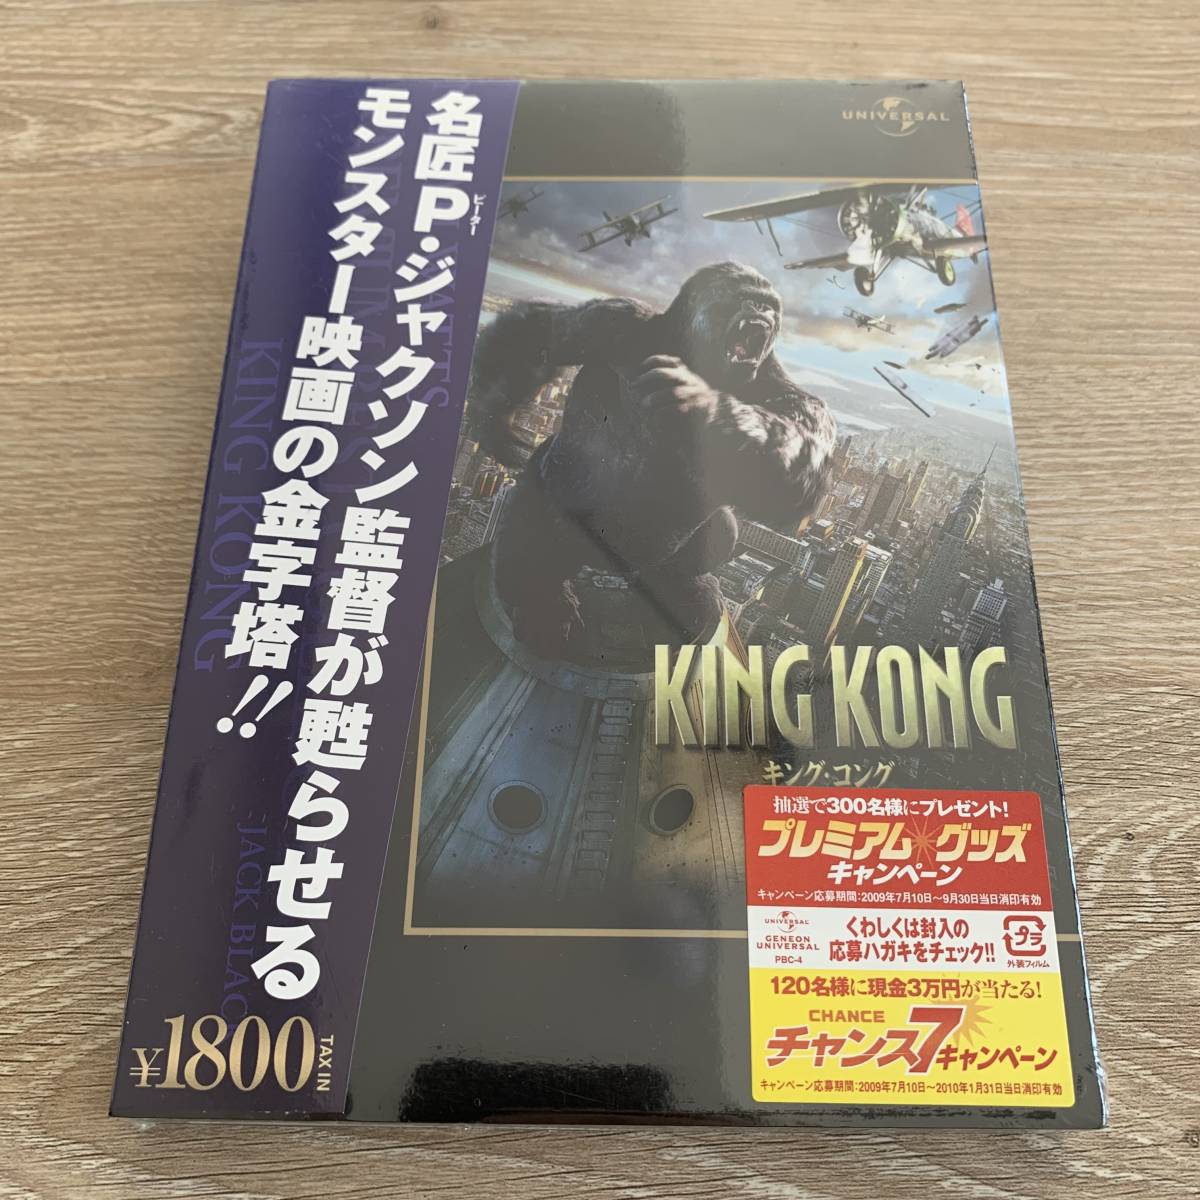 キング・コング(2005) 【プレミアム・ベスト・コレクション】新品未開封DVD